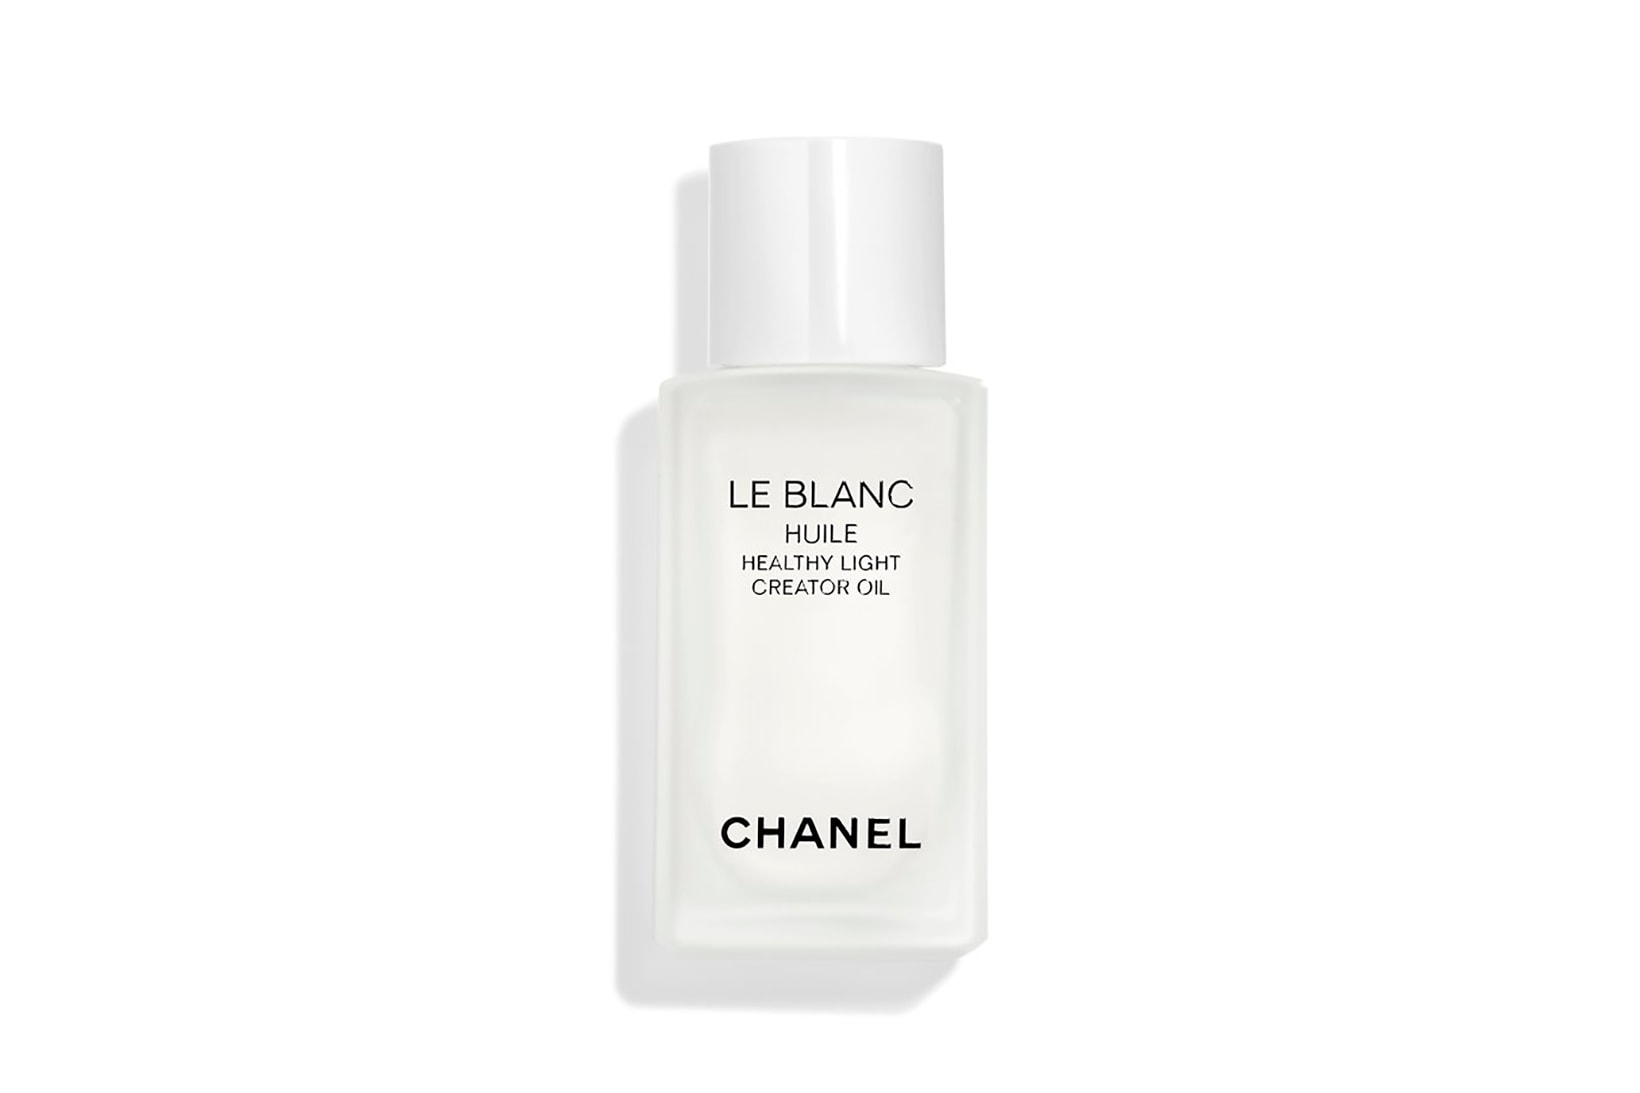 Chanel's Le Blanc & La Fleur et L'Eau Collections